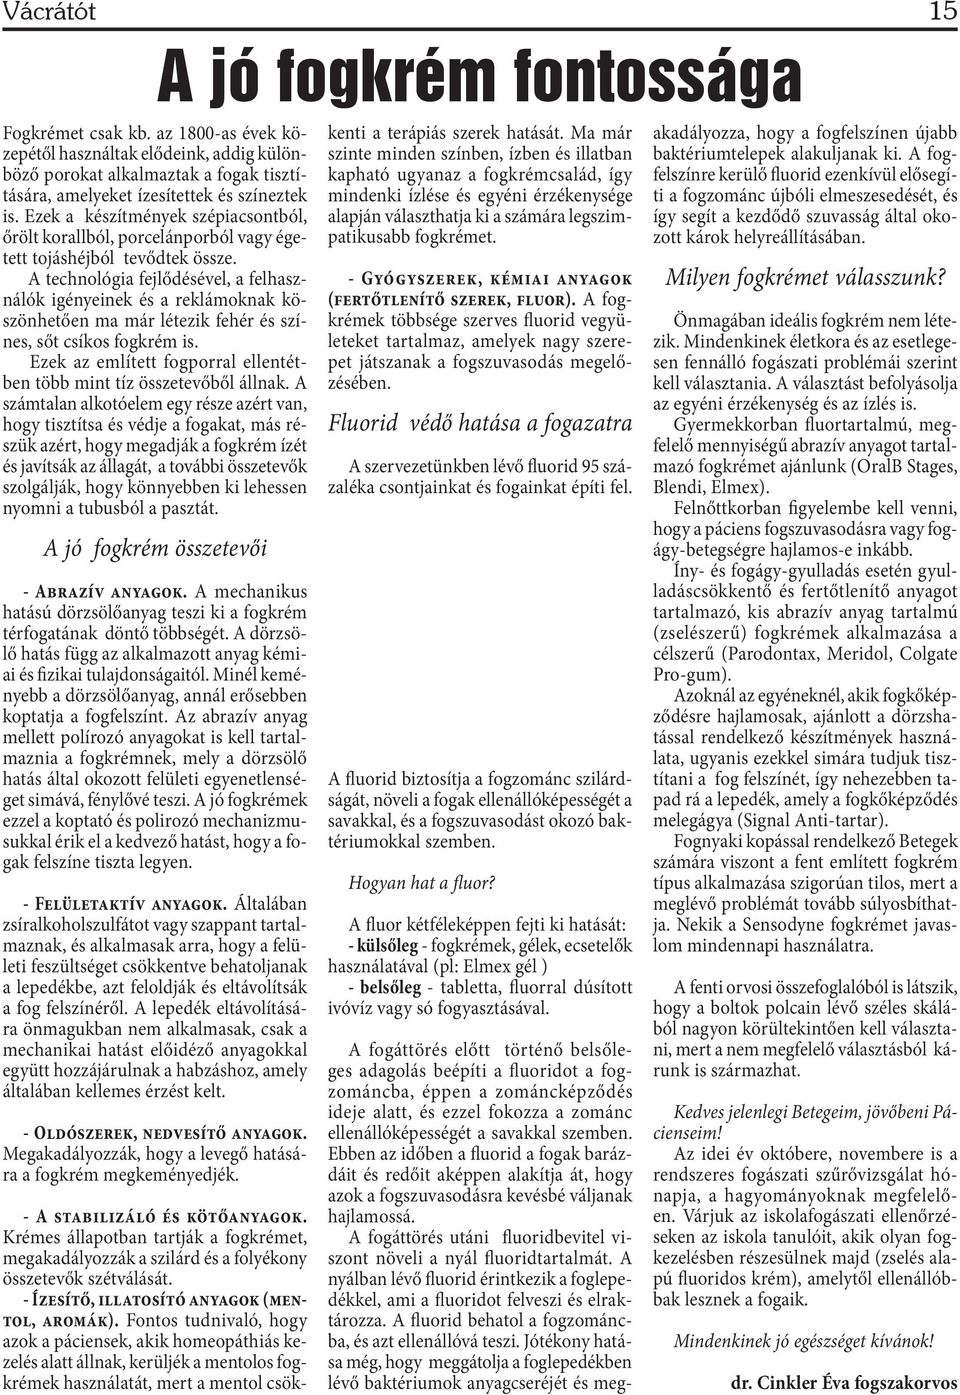 Vácrátóti Hírmondó Vácrátót Község Önkormányzatának lapja * A lap ingyenes  * augusztus - PDF Ingyenes letöltés